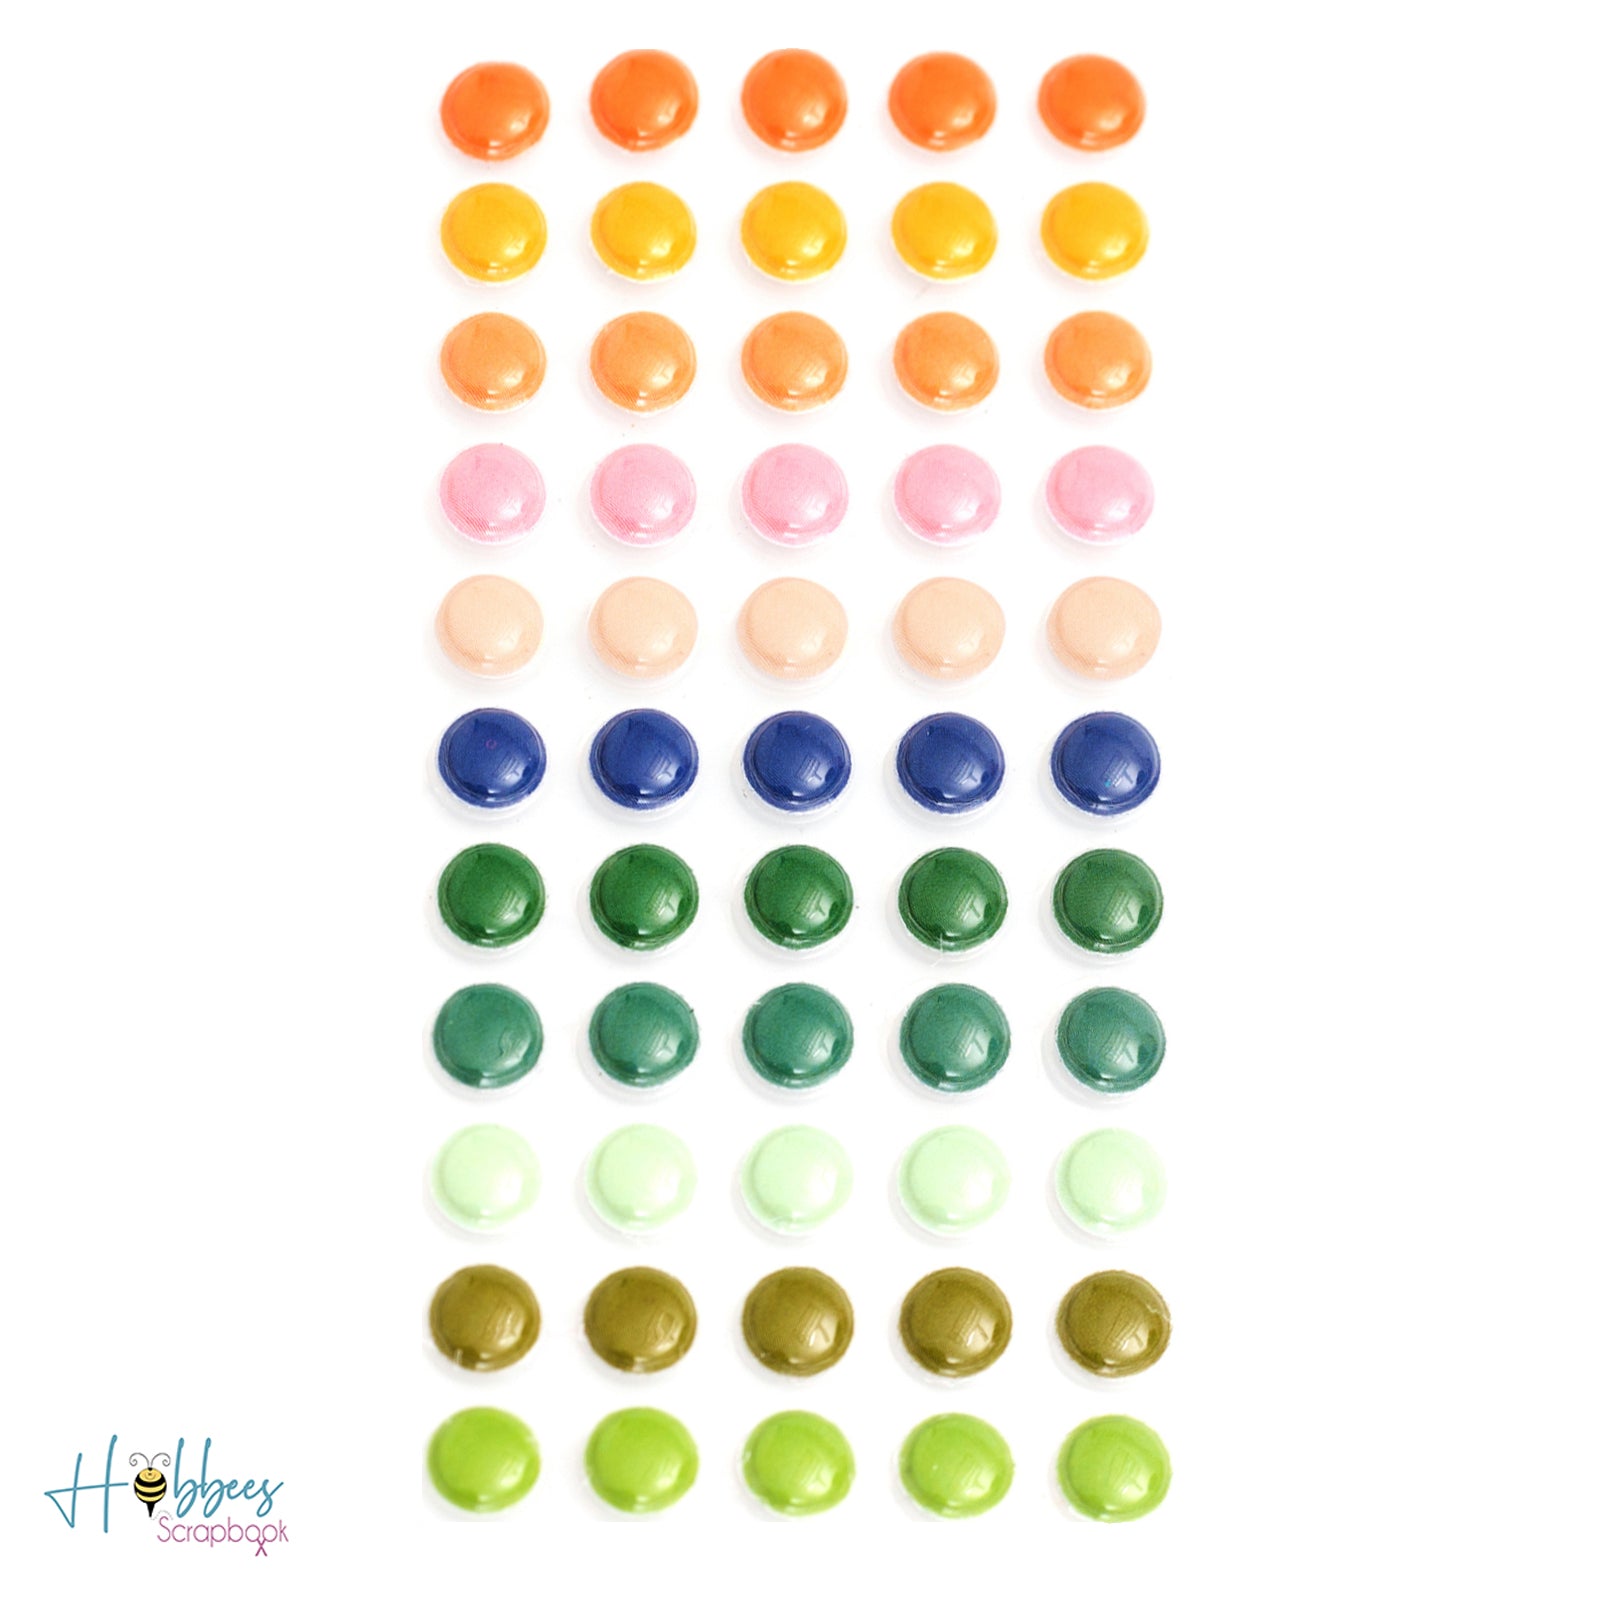 Colorful Puffy Dots Stickers / Estampas en 3D Decorativas